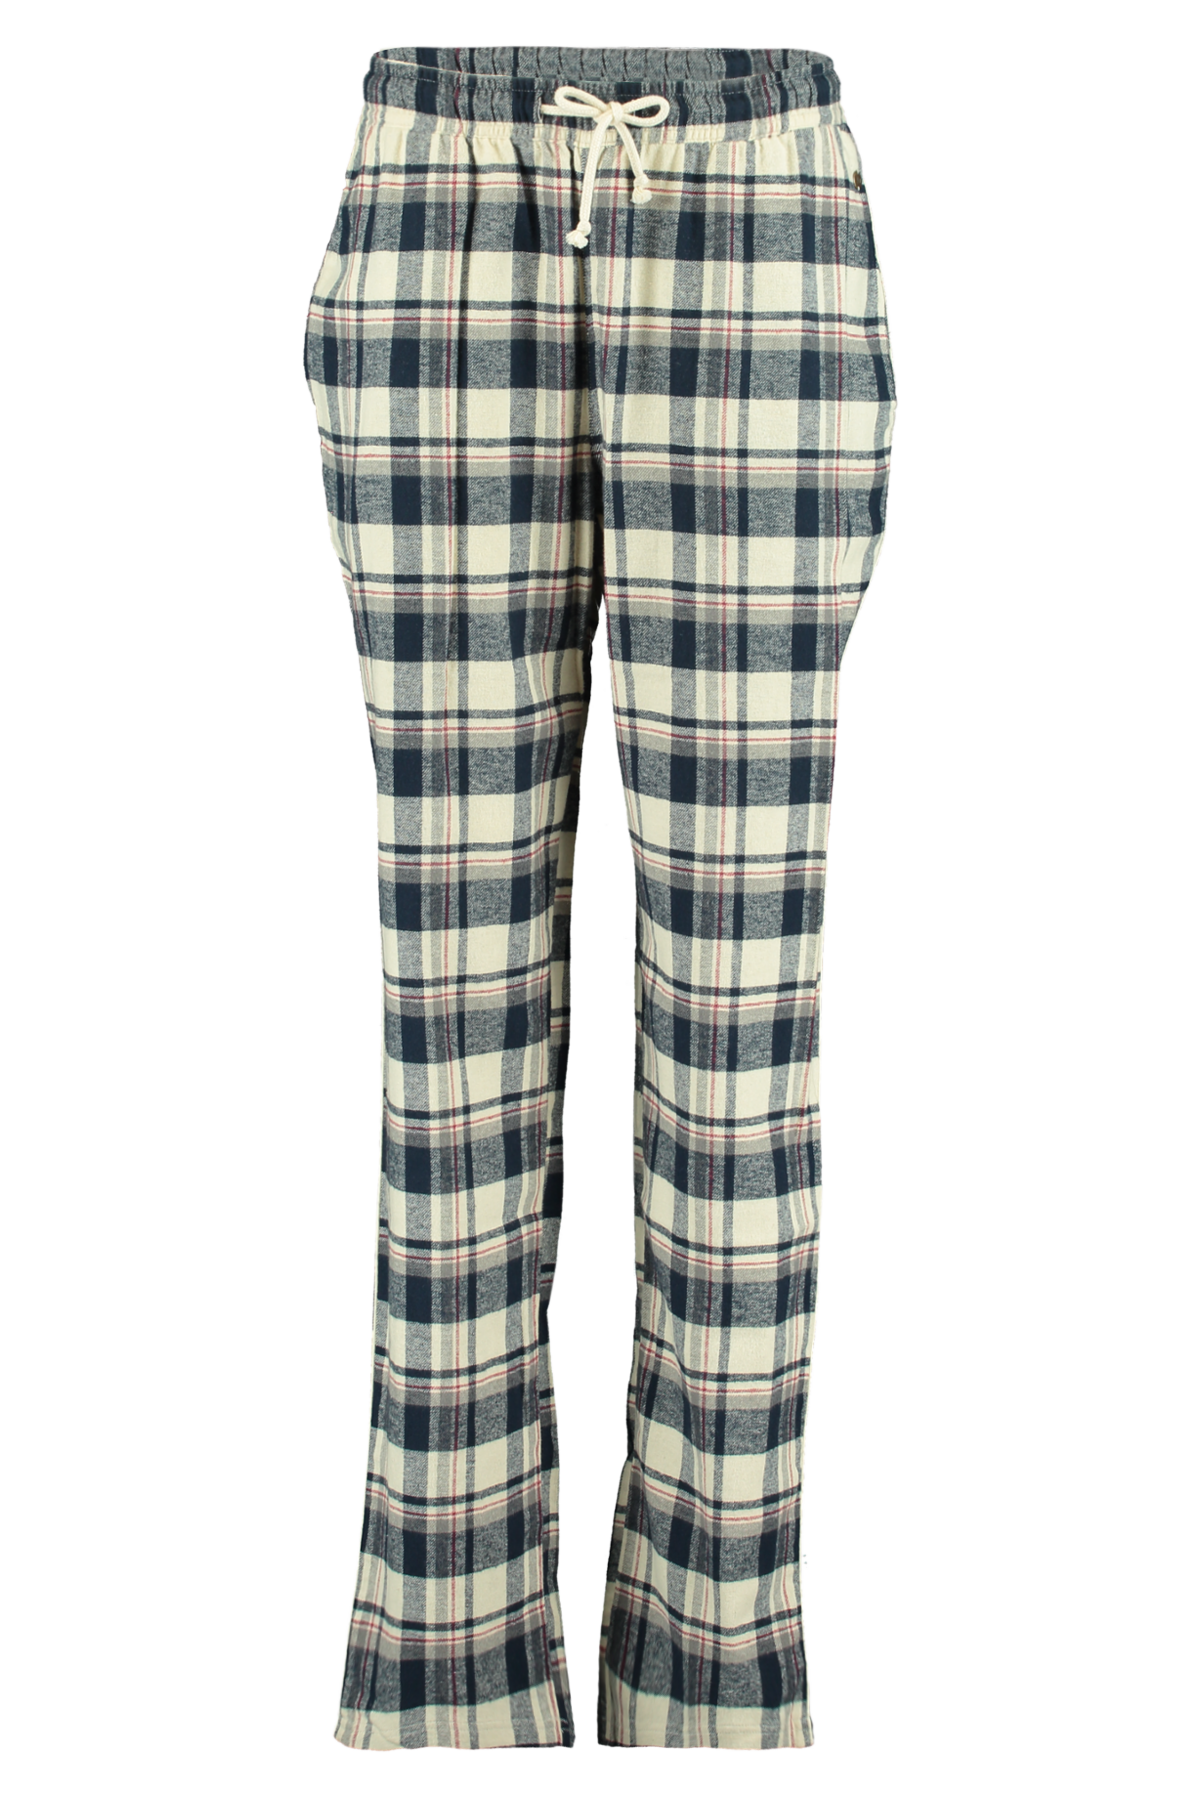 Filles en flanelle 100% coton Pyjamas Lot Manches Longues Élastique Pantalon Pyjama Taille 